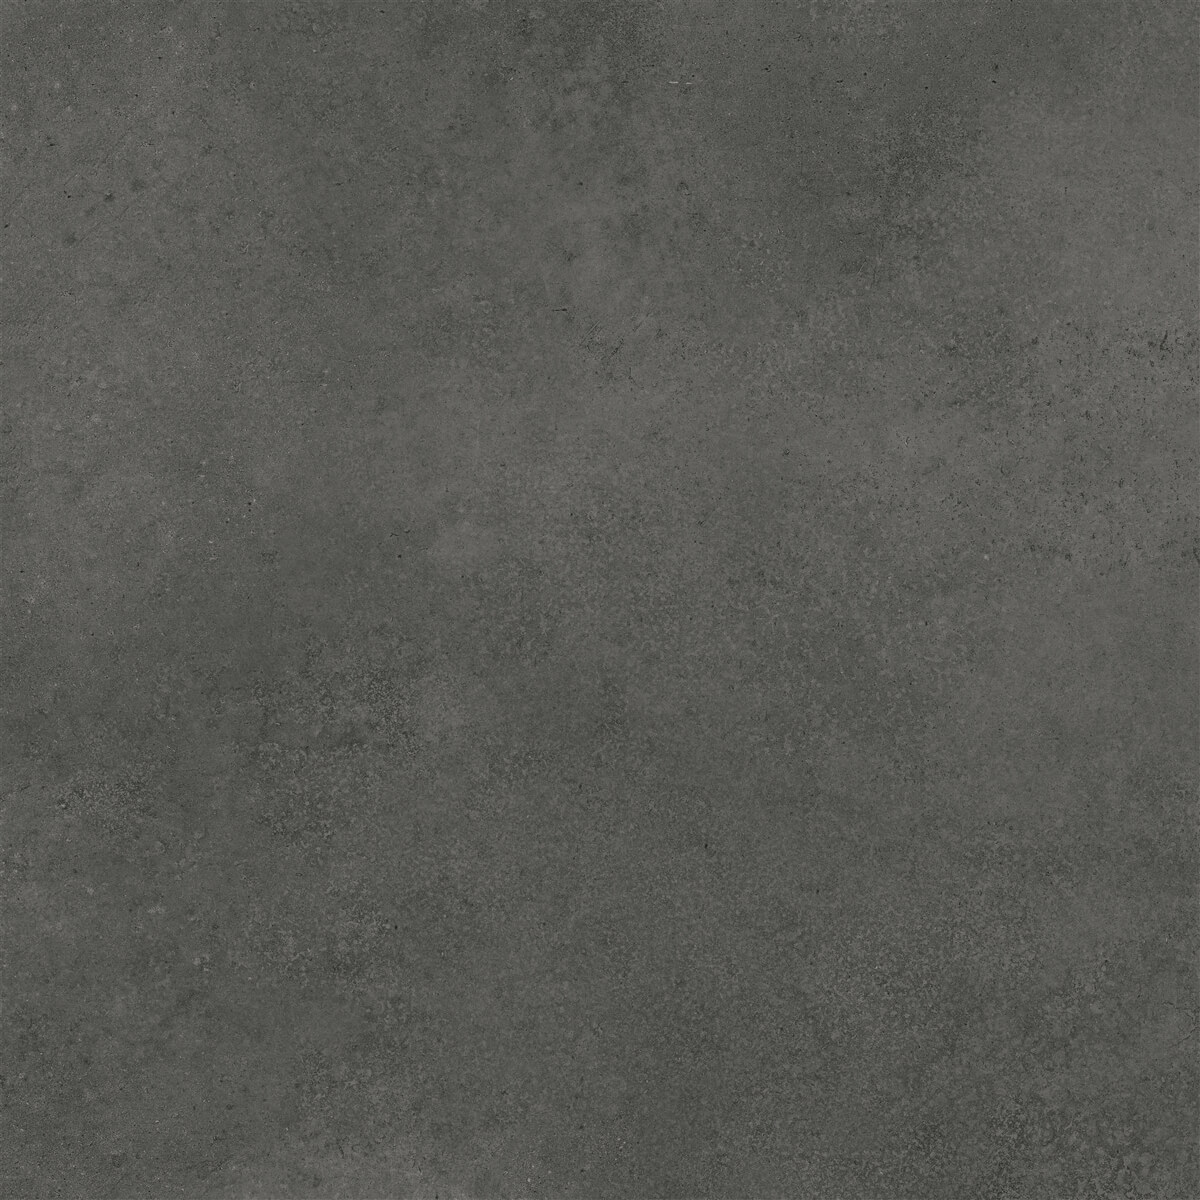 Vertigo 8520 Concrete Dark Grey